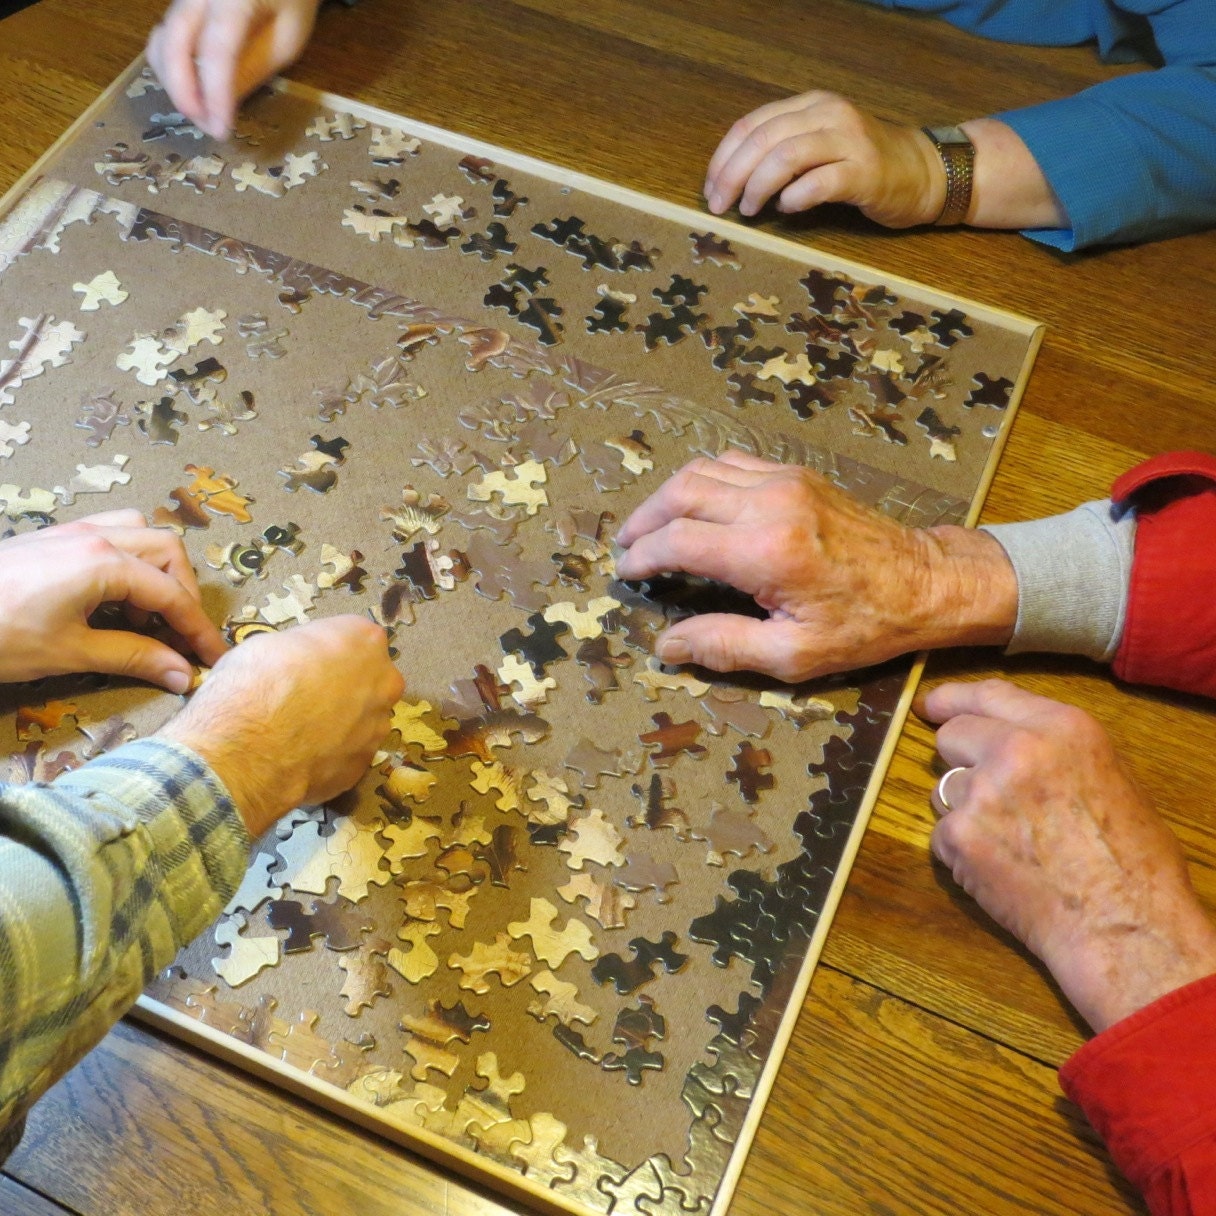 Puzzle board 300 à 1000 pièces